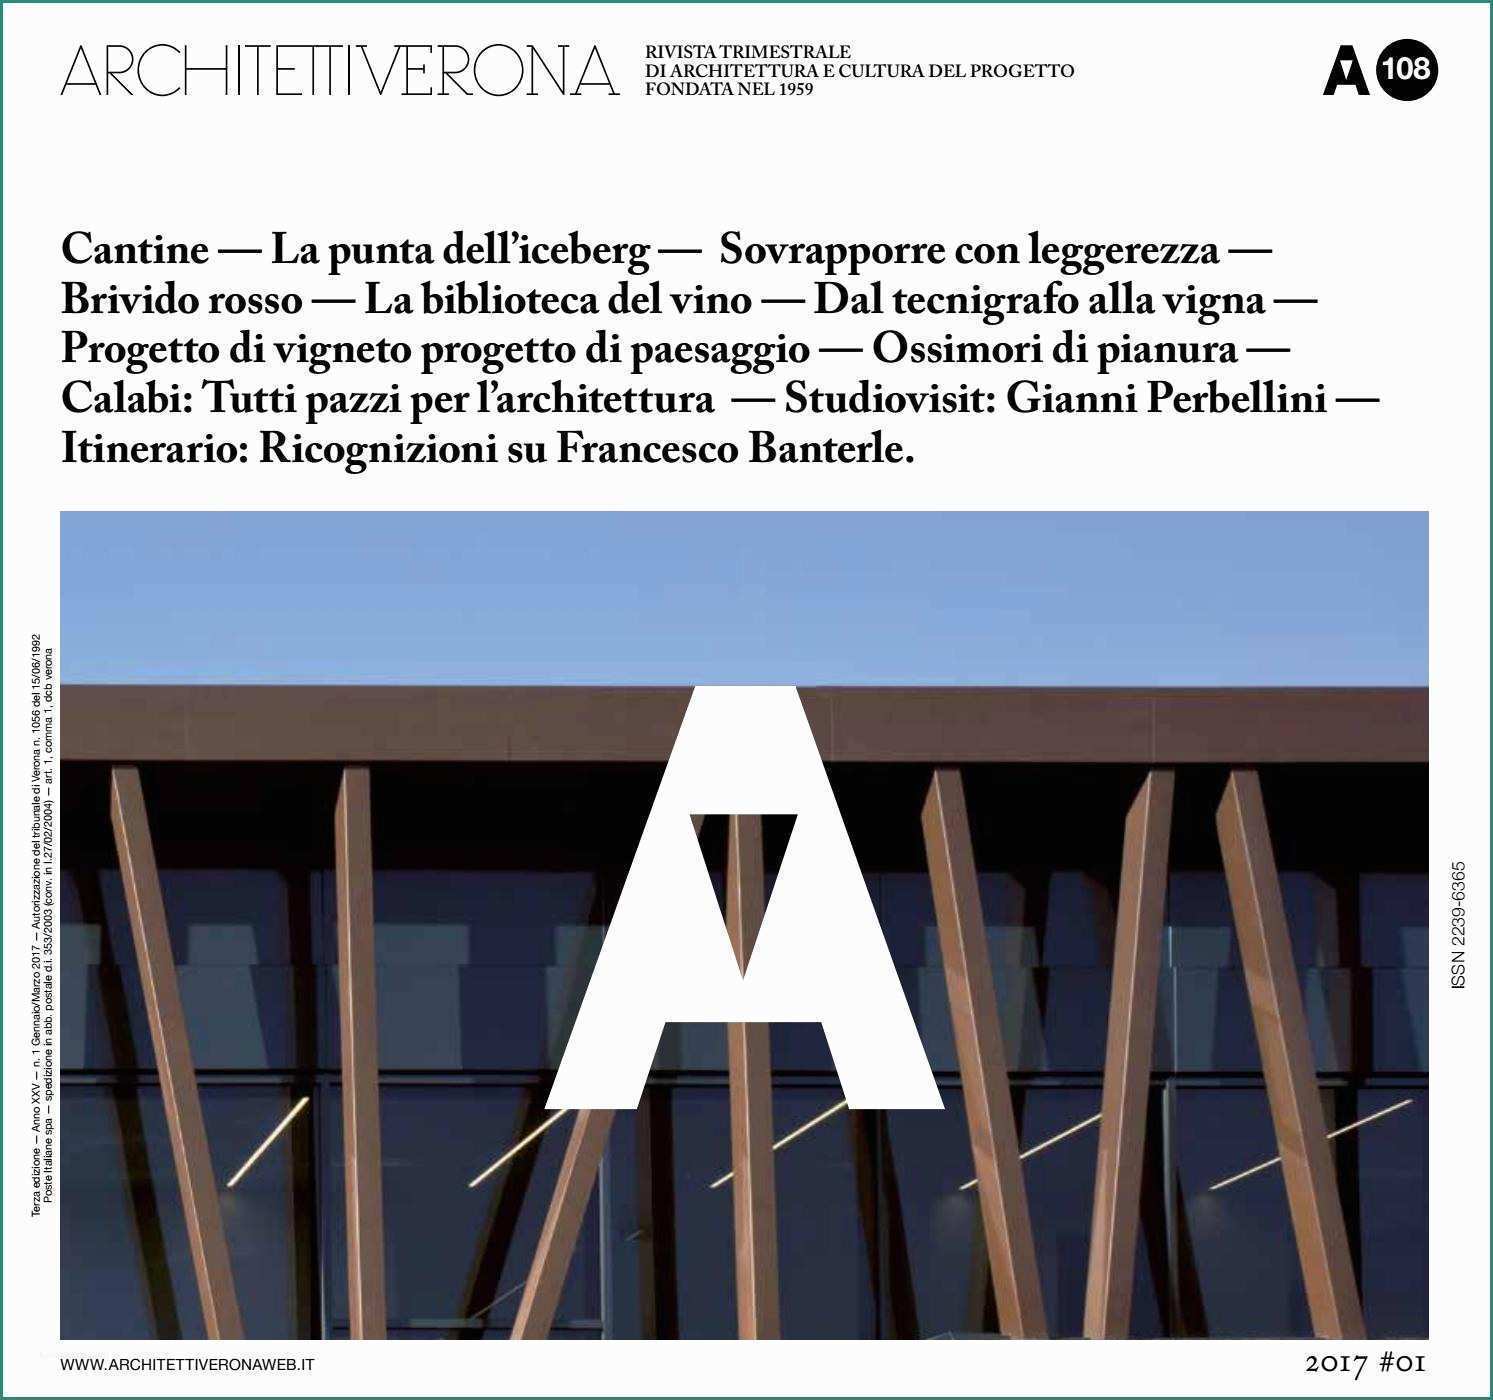 Pannelli In Lamiera Per Recinzioni E Architettiverona 108 by Architettiverona issuu